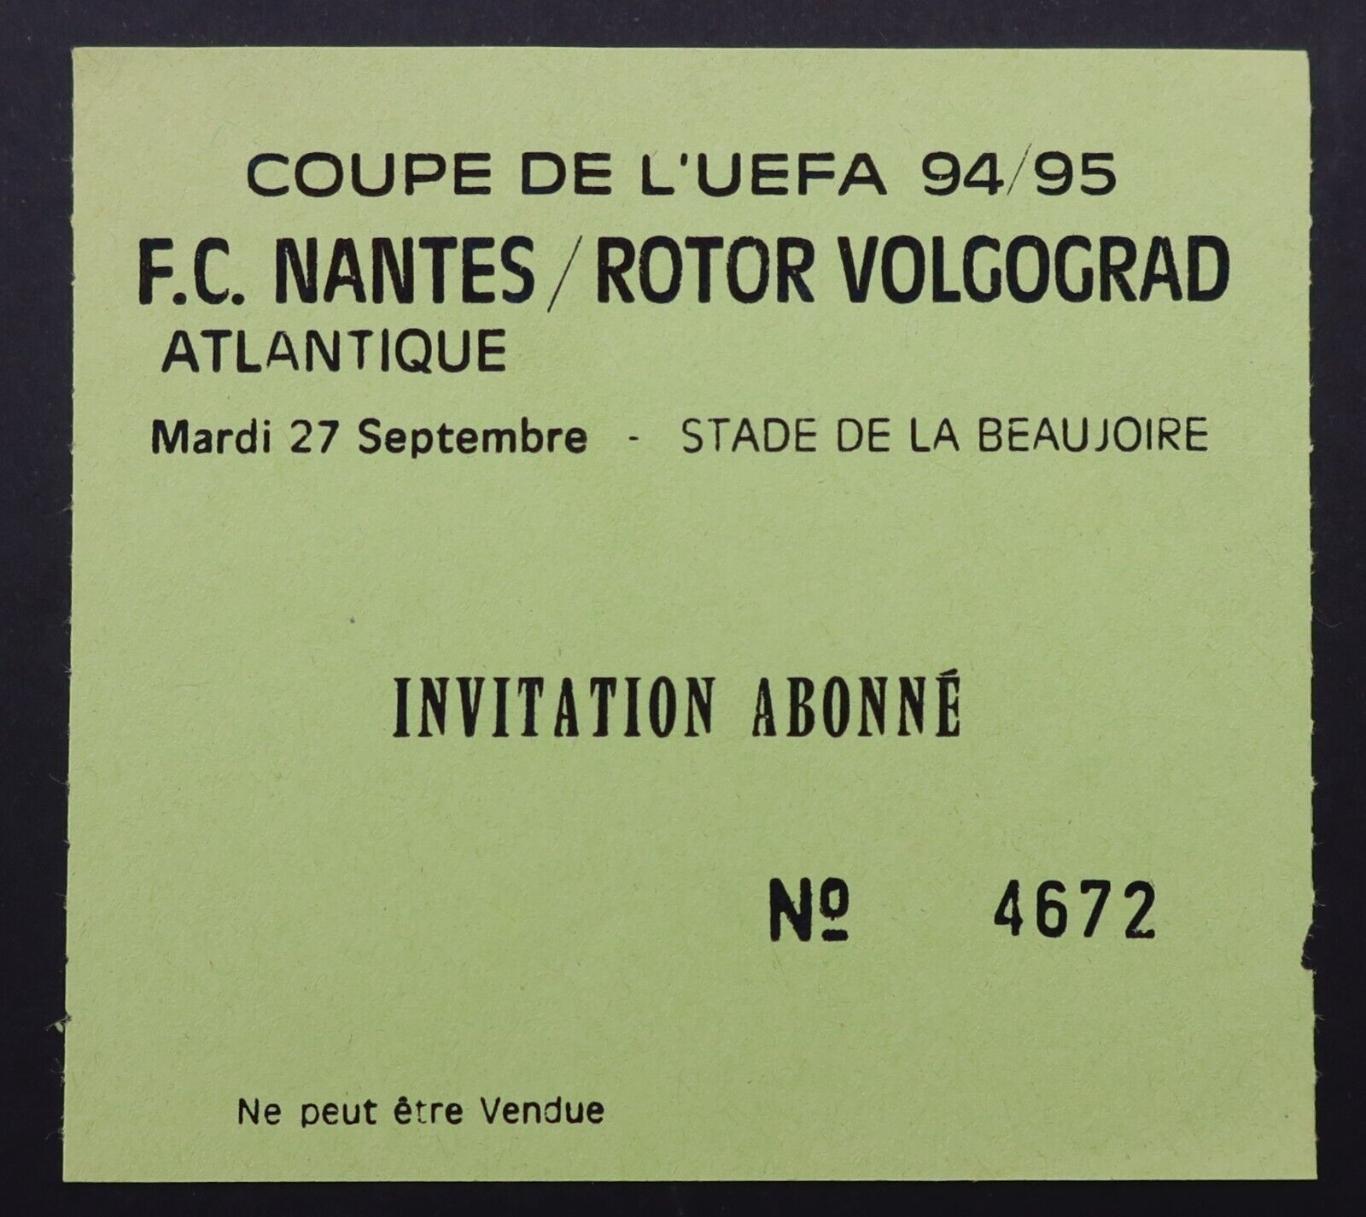 Билет Нант Франция - Ротор волгоград россия 1994